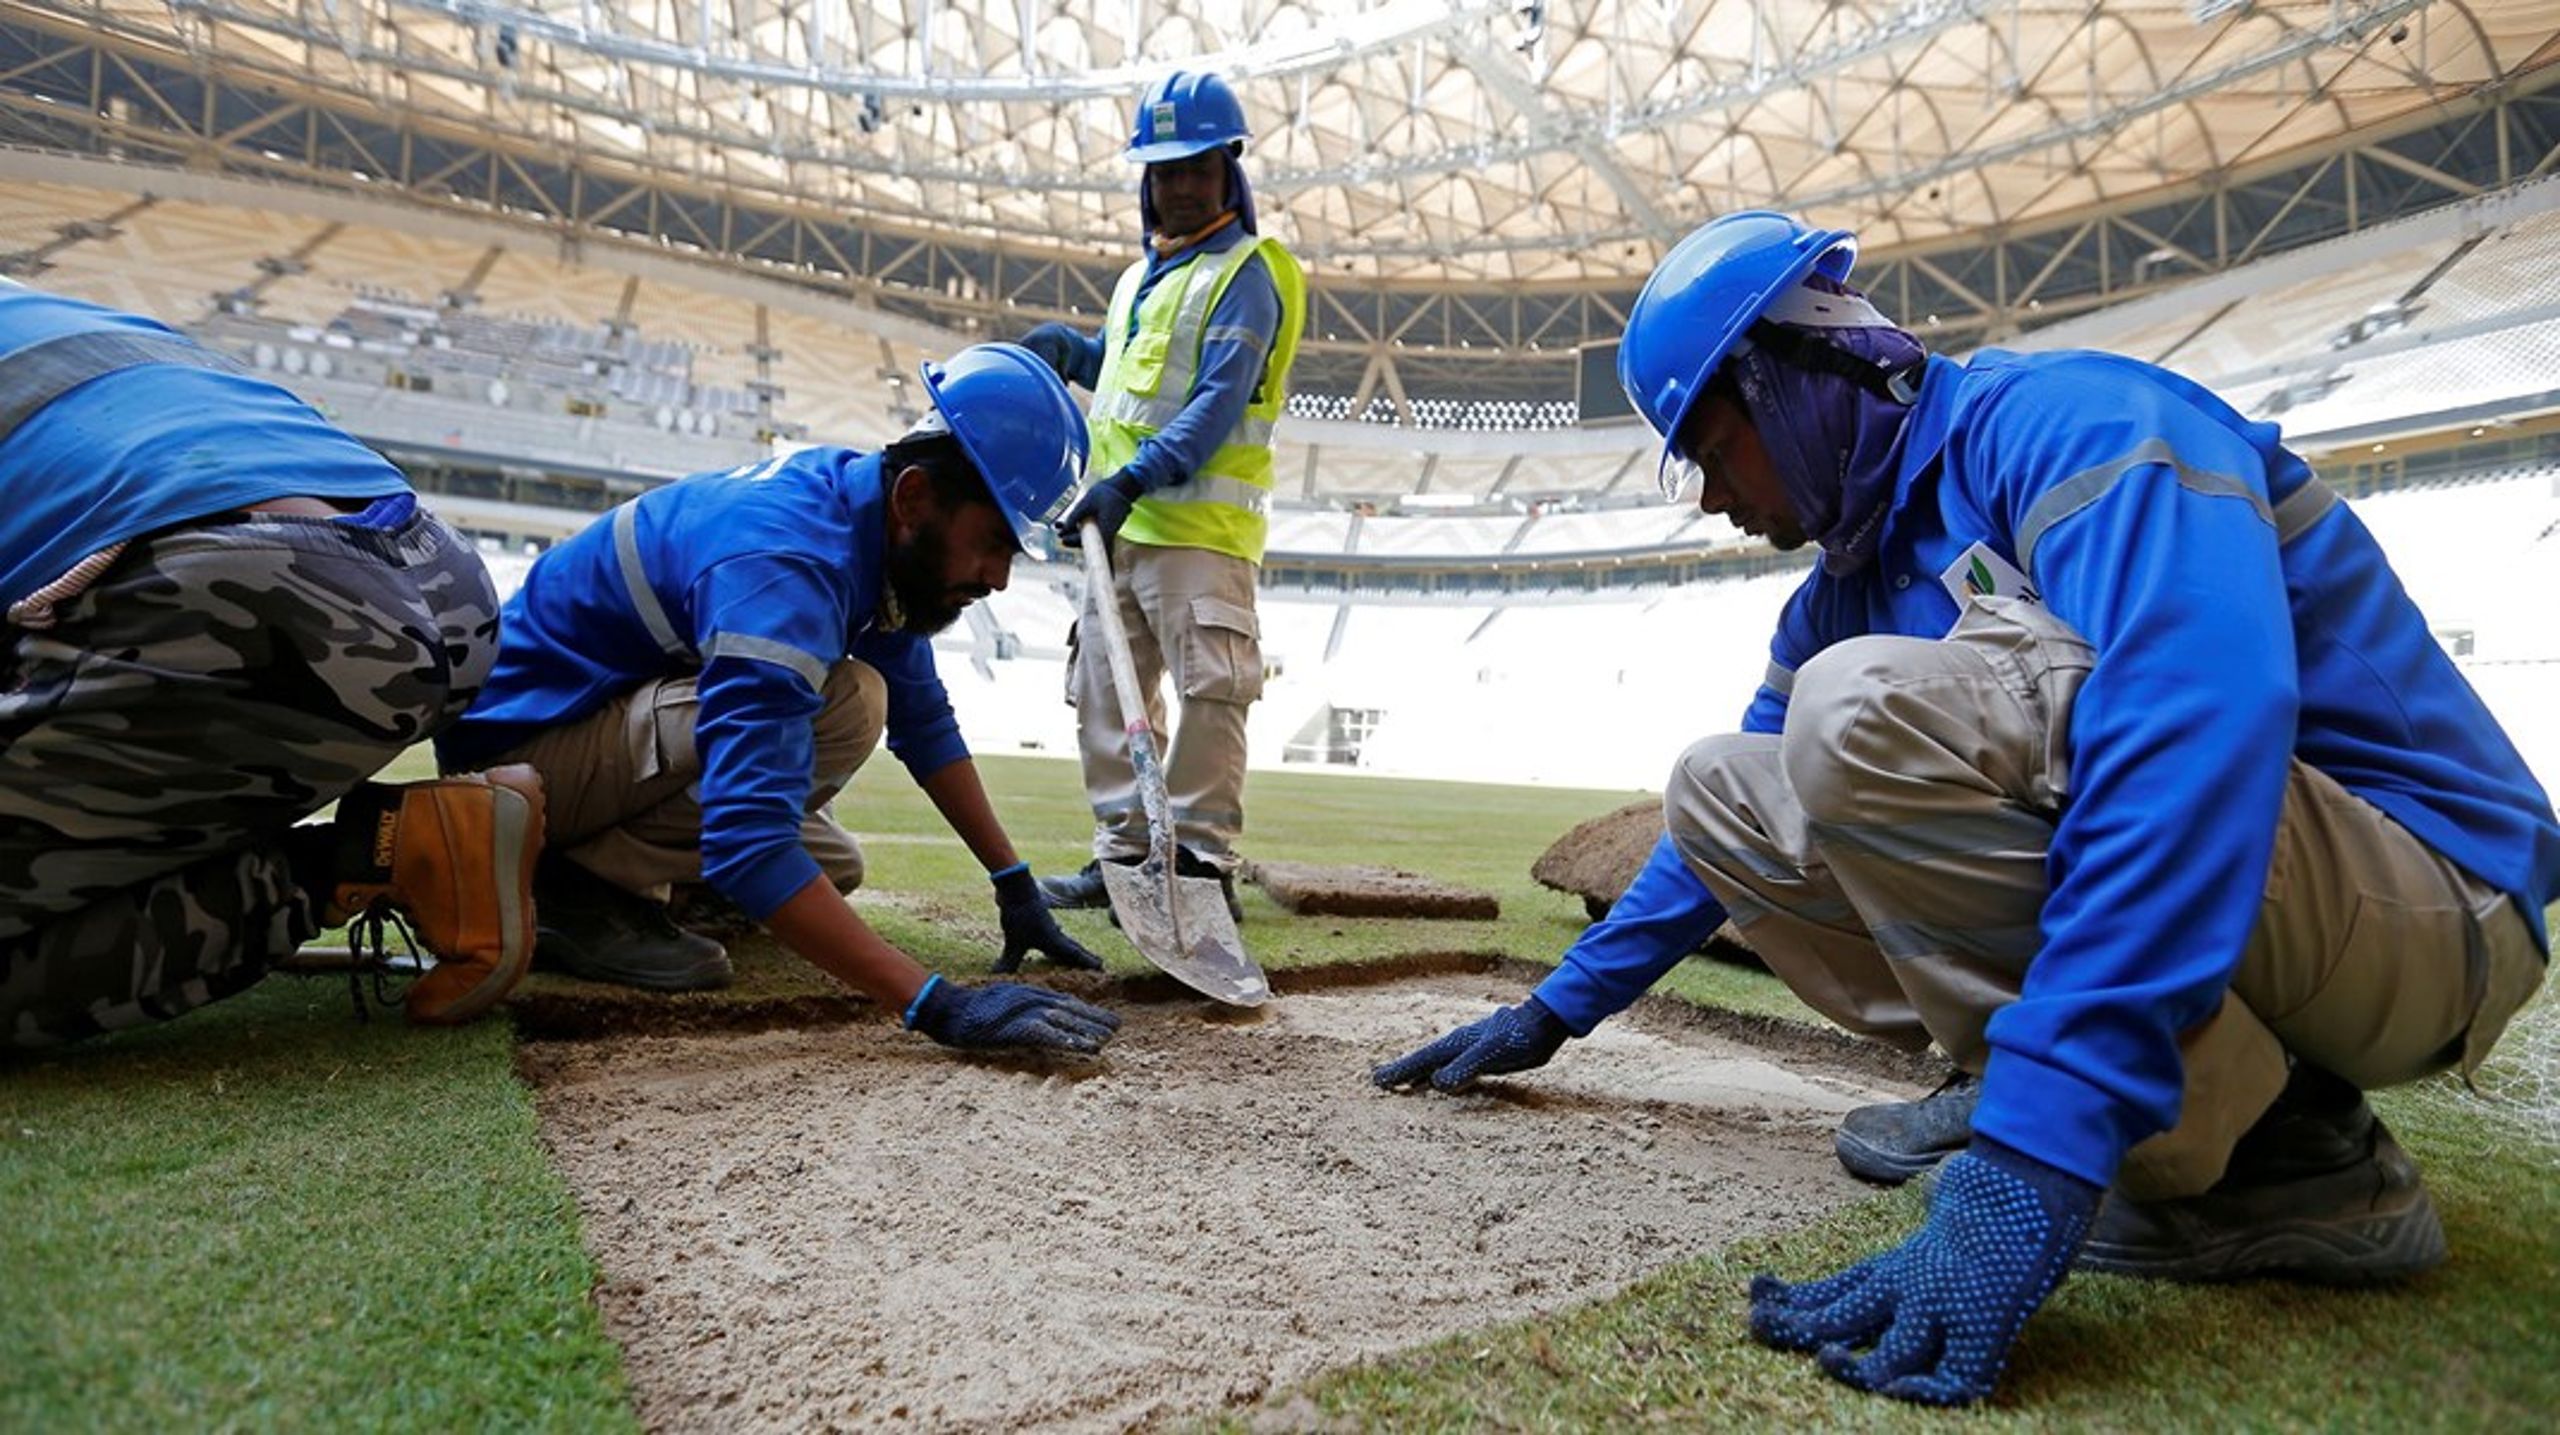 Spritnye stadions er sprunget op af ørkensandet i Qatar under arbejdsvilkår, der har fået kritikken til at hagle ned over værterne for årets VM i fodbold.